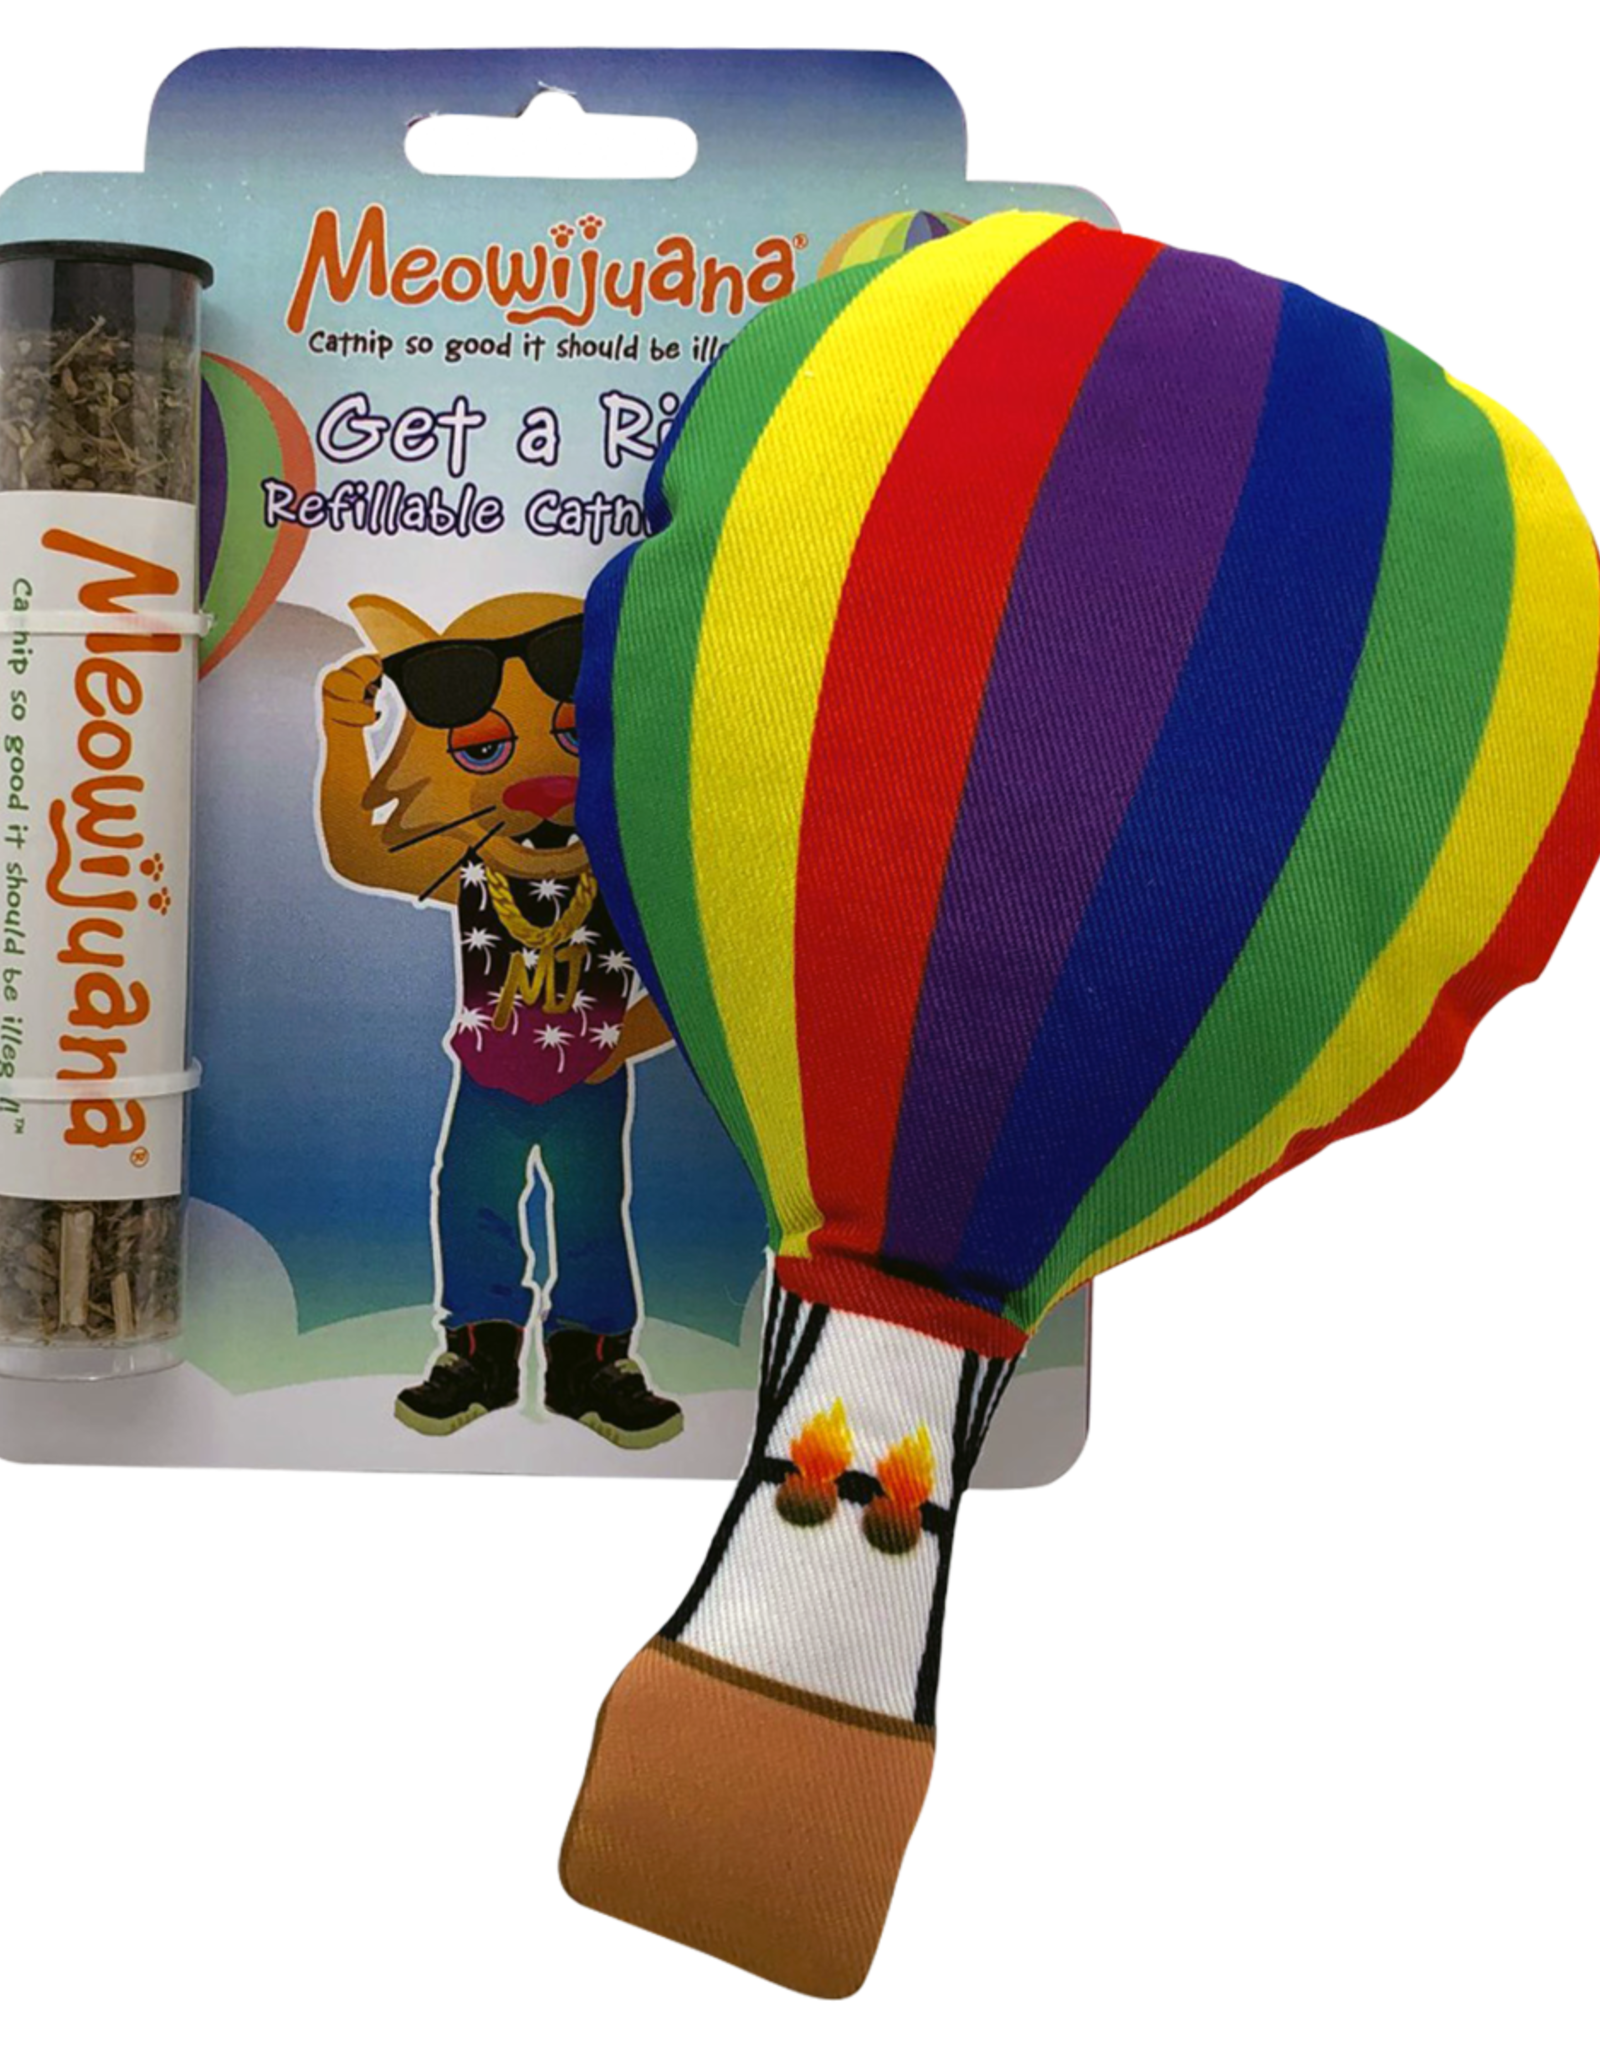 Meowijuana Meowijuana Get a Rise Refillable Balloon Cat Toy